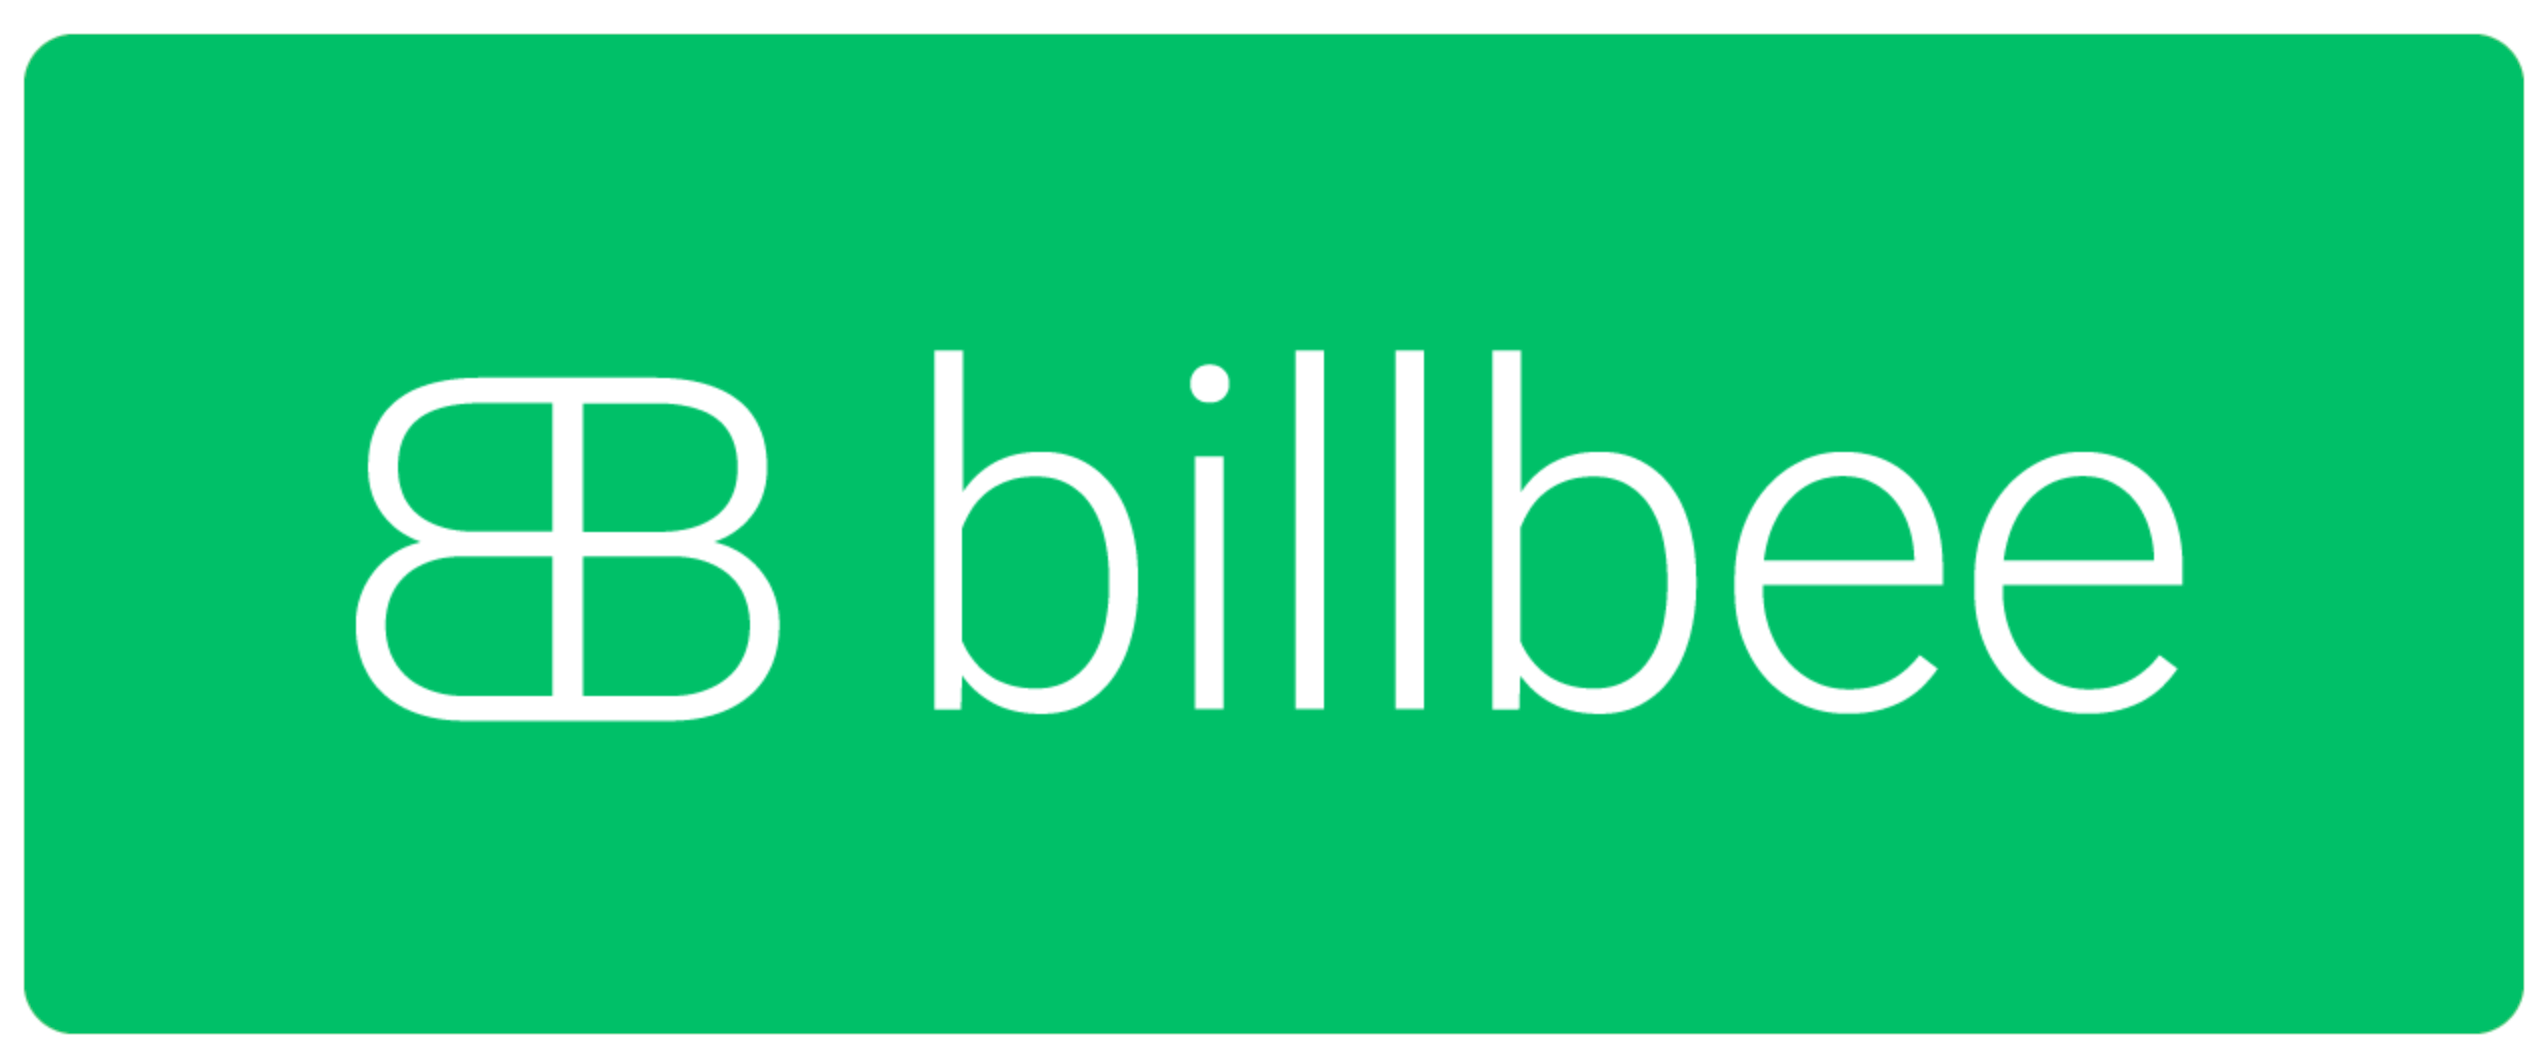 Billbee Logo